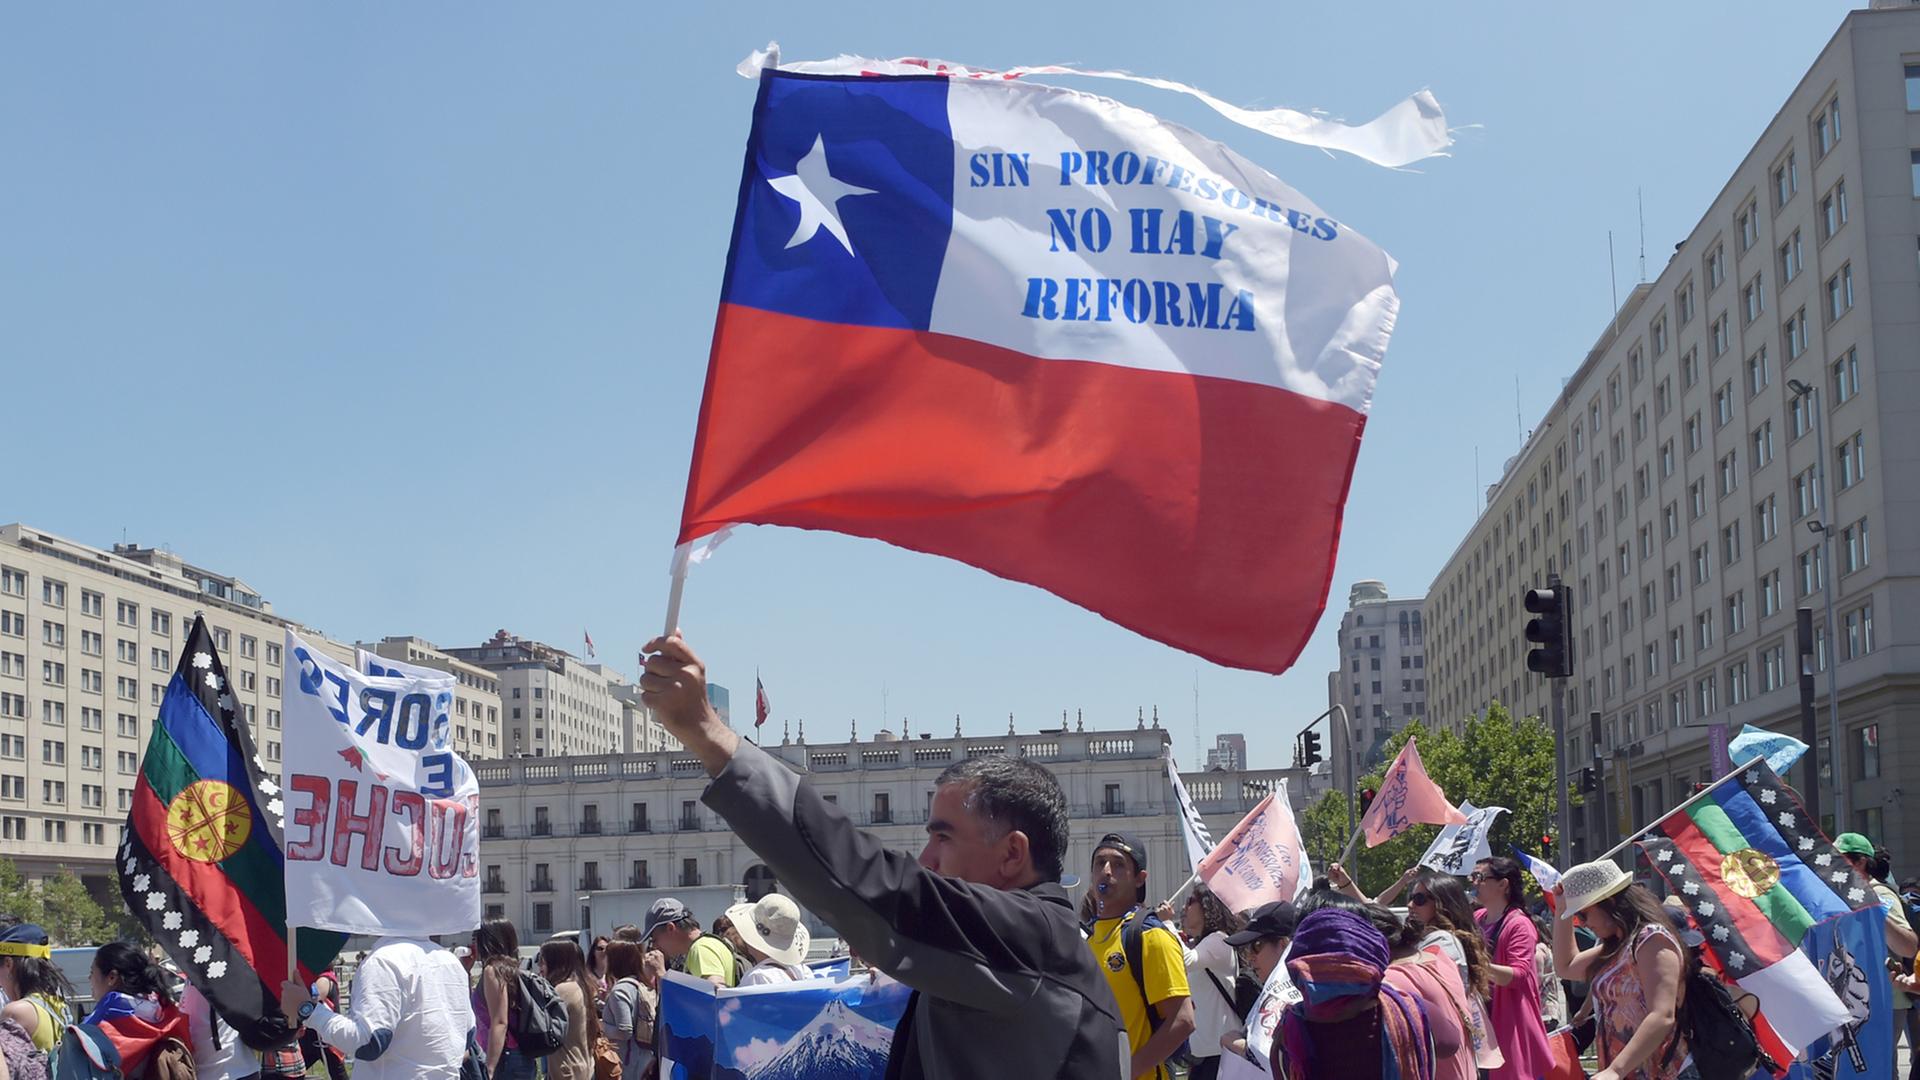 Demonstranten auf einer Straße, einer schwenkt die chilenische Flagge mit der Aufschrift "Sin profesores no hay reforma"